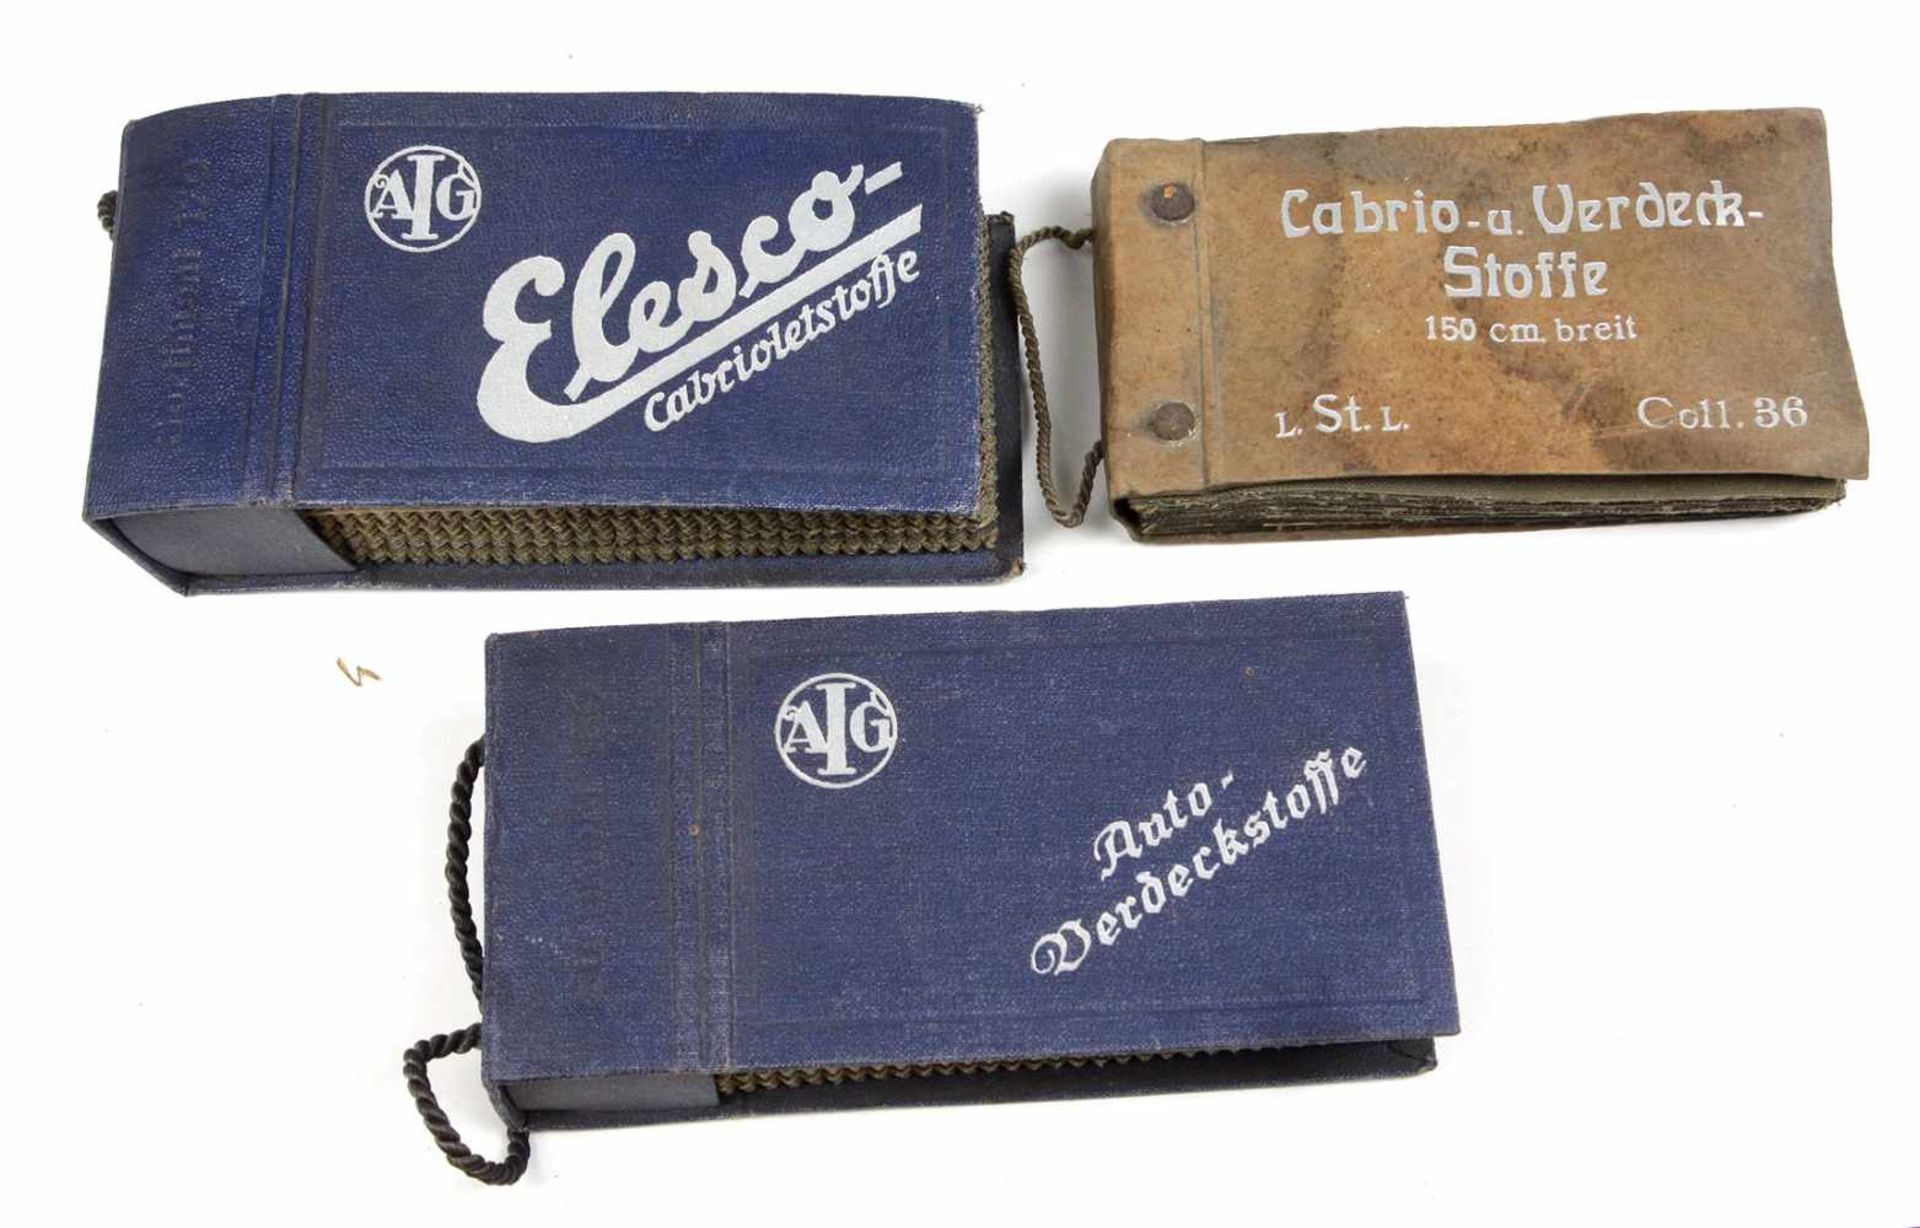 3 Mustermappen Verdeckestoffe 1935dabei *Cabrio- u. Verdeck-Stoffe 150 cm breit*, Coll. 36